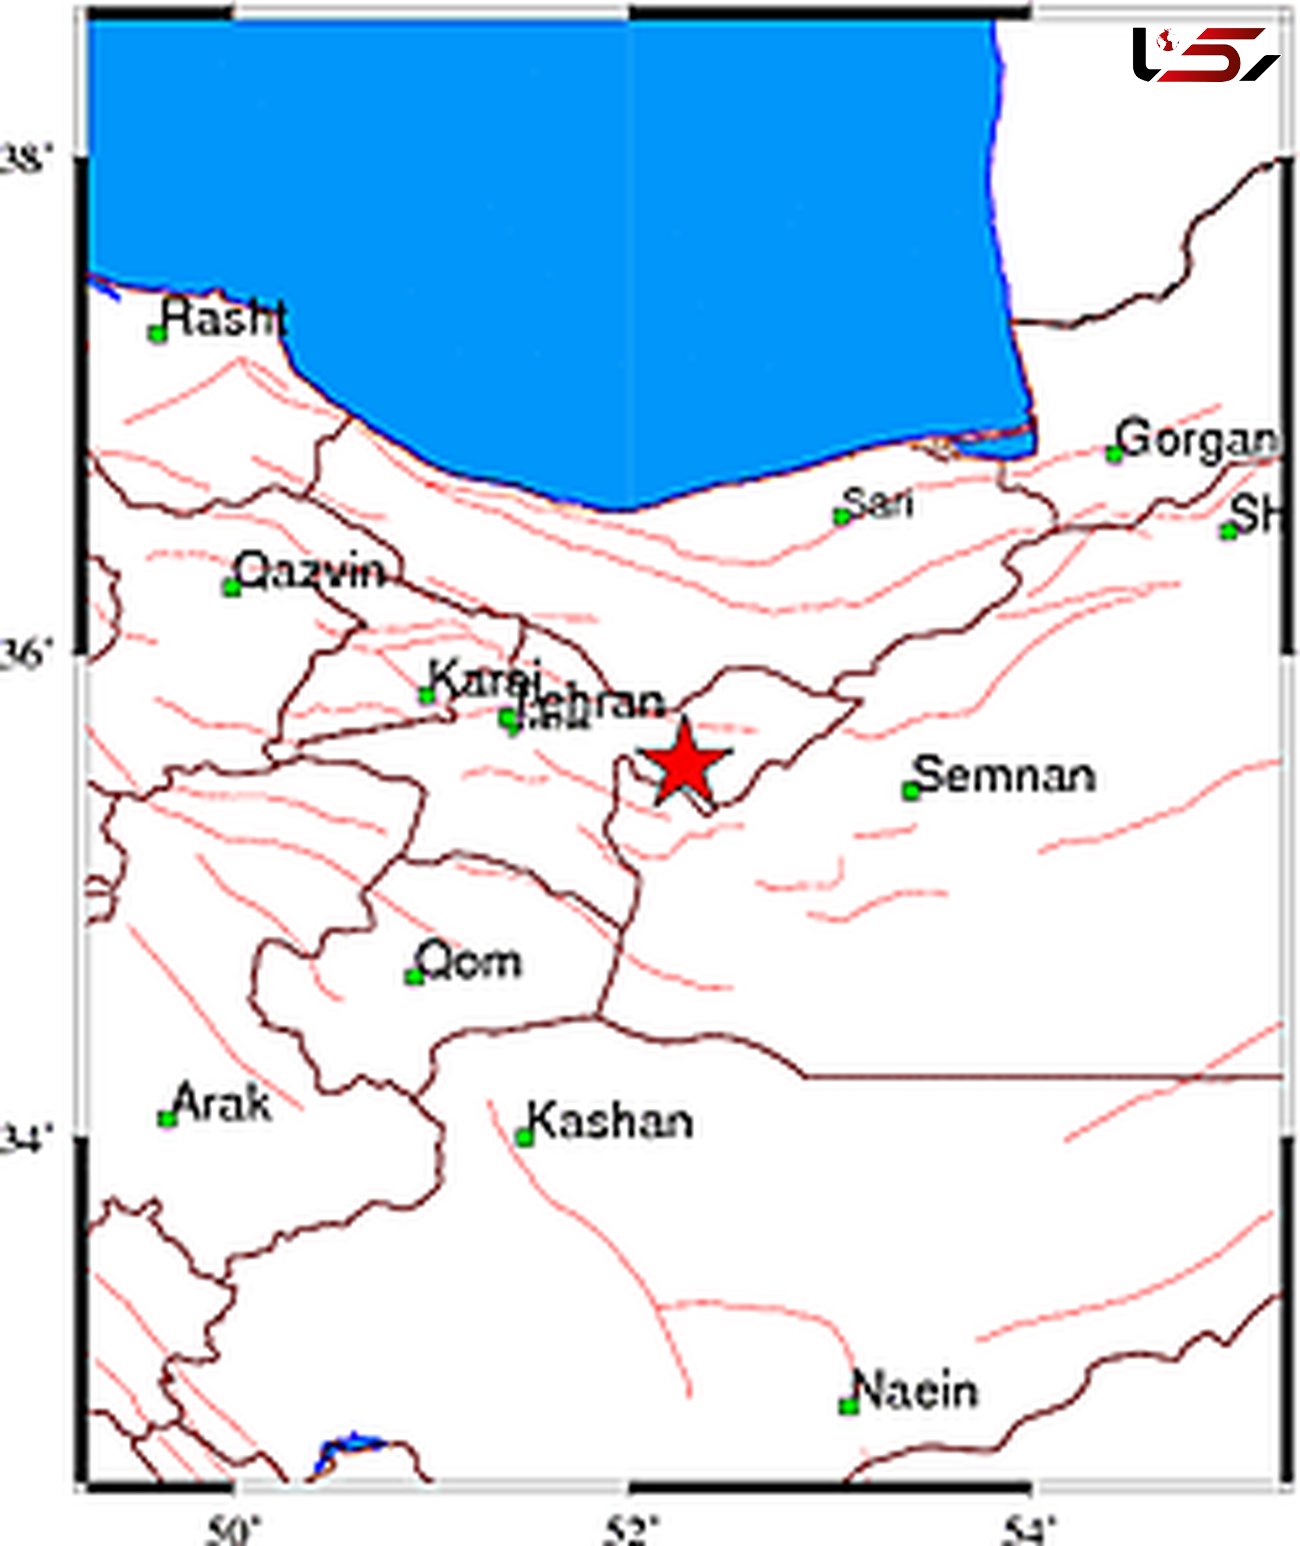 زلزله در دماوند تهران / لحظاتی پیش رخ داد + محل دقیق زلزله